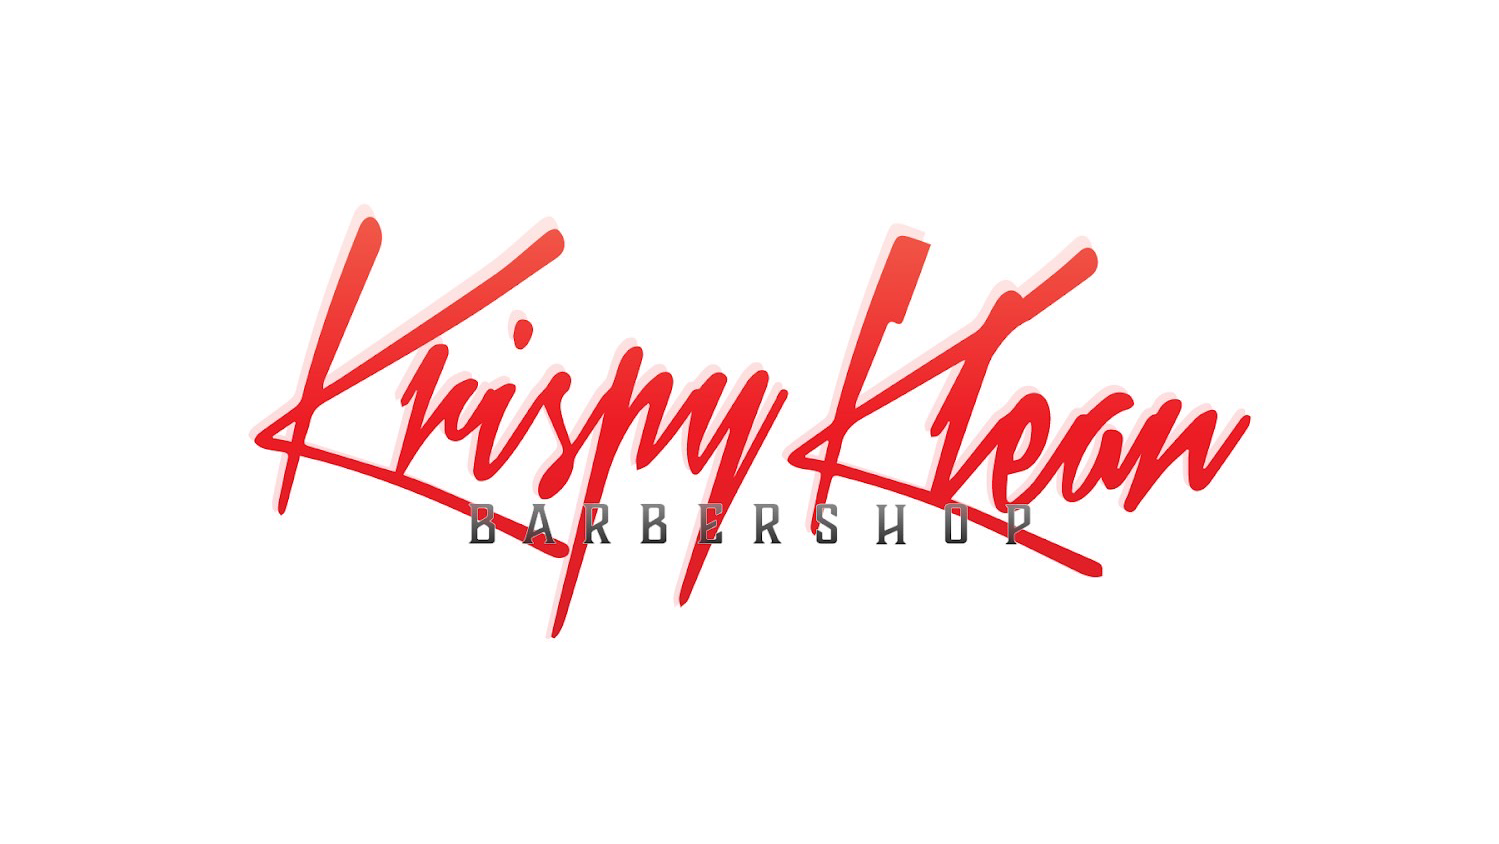 Krispy Klean Barbershop 2